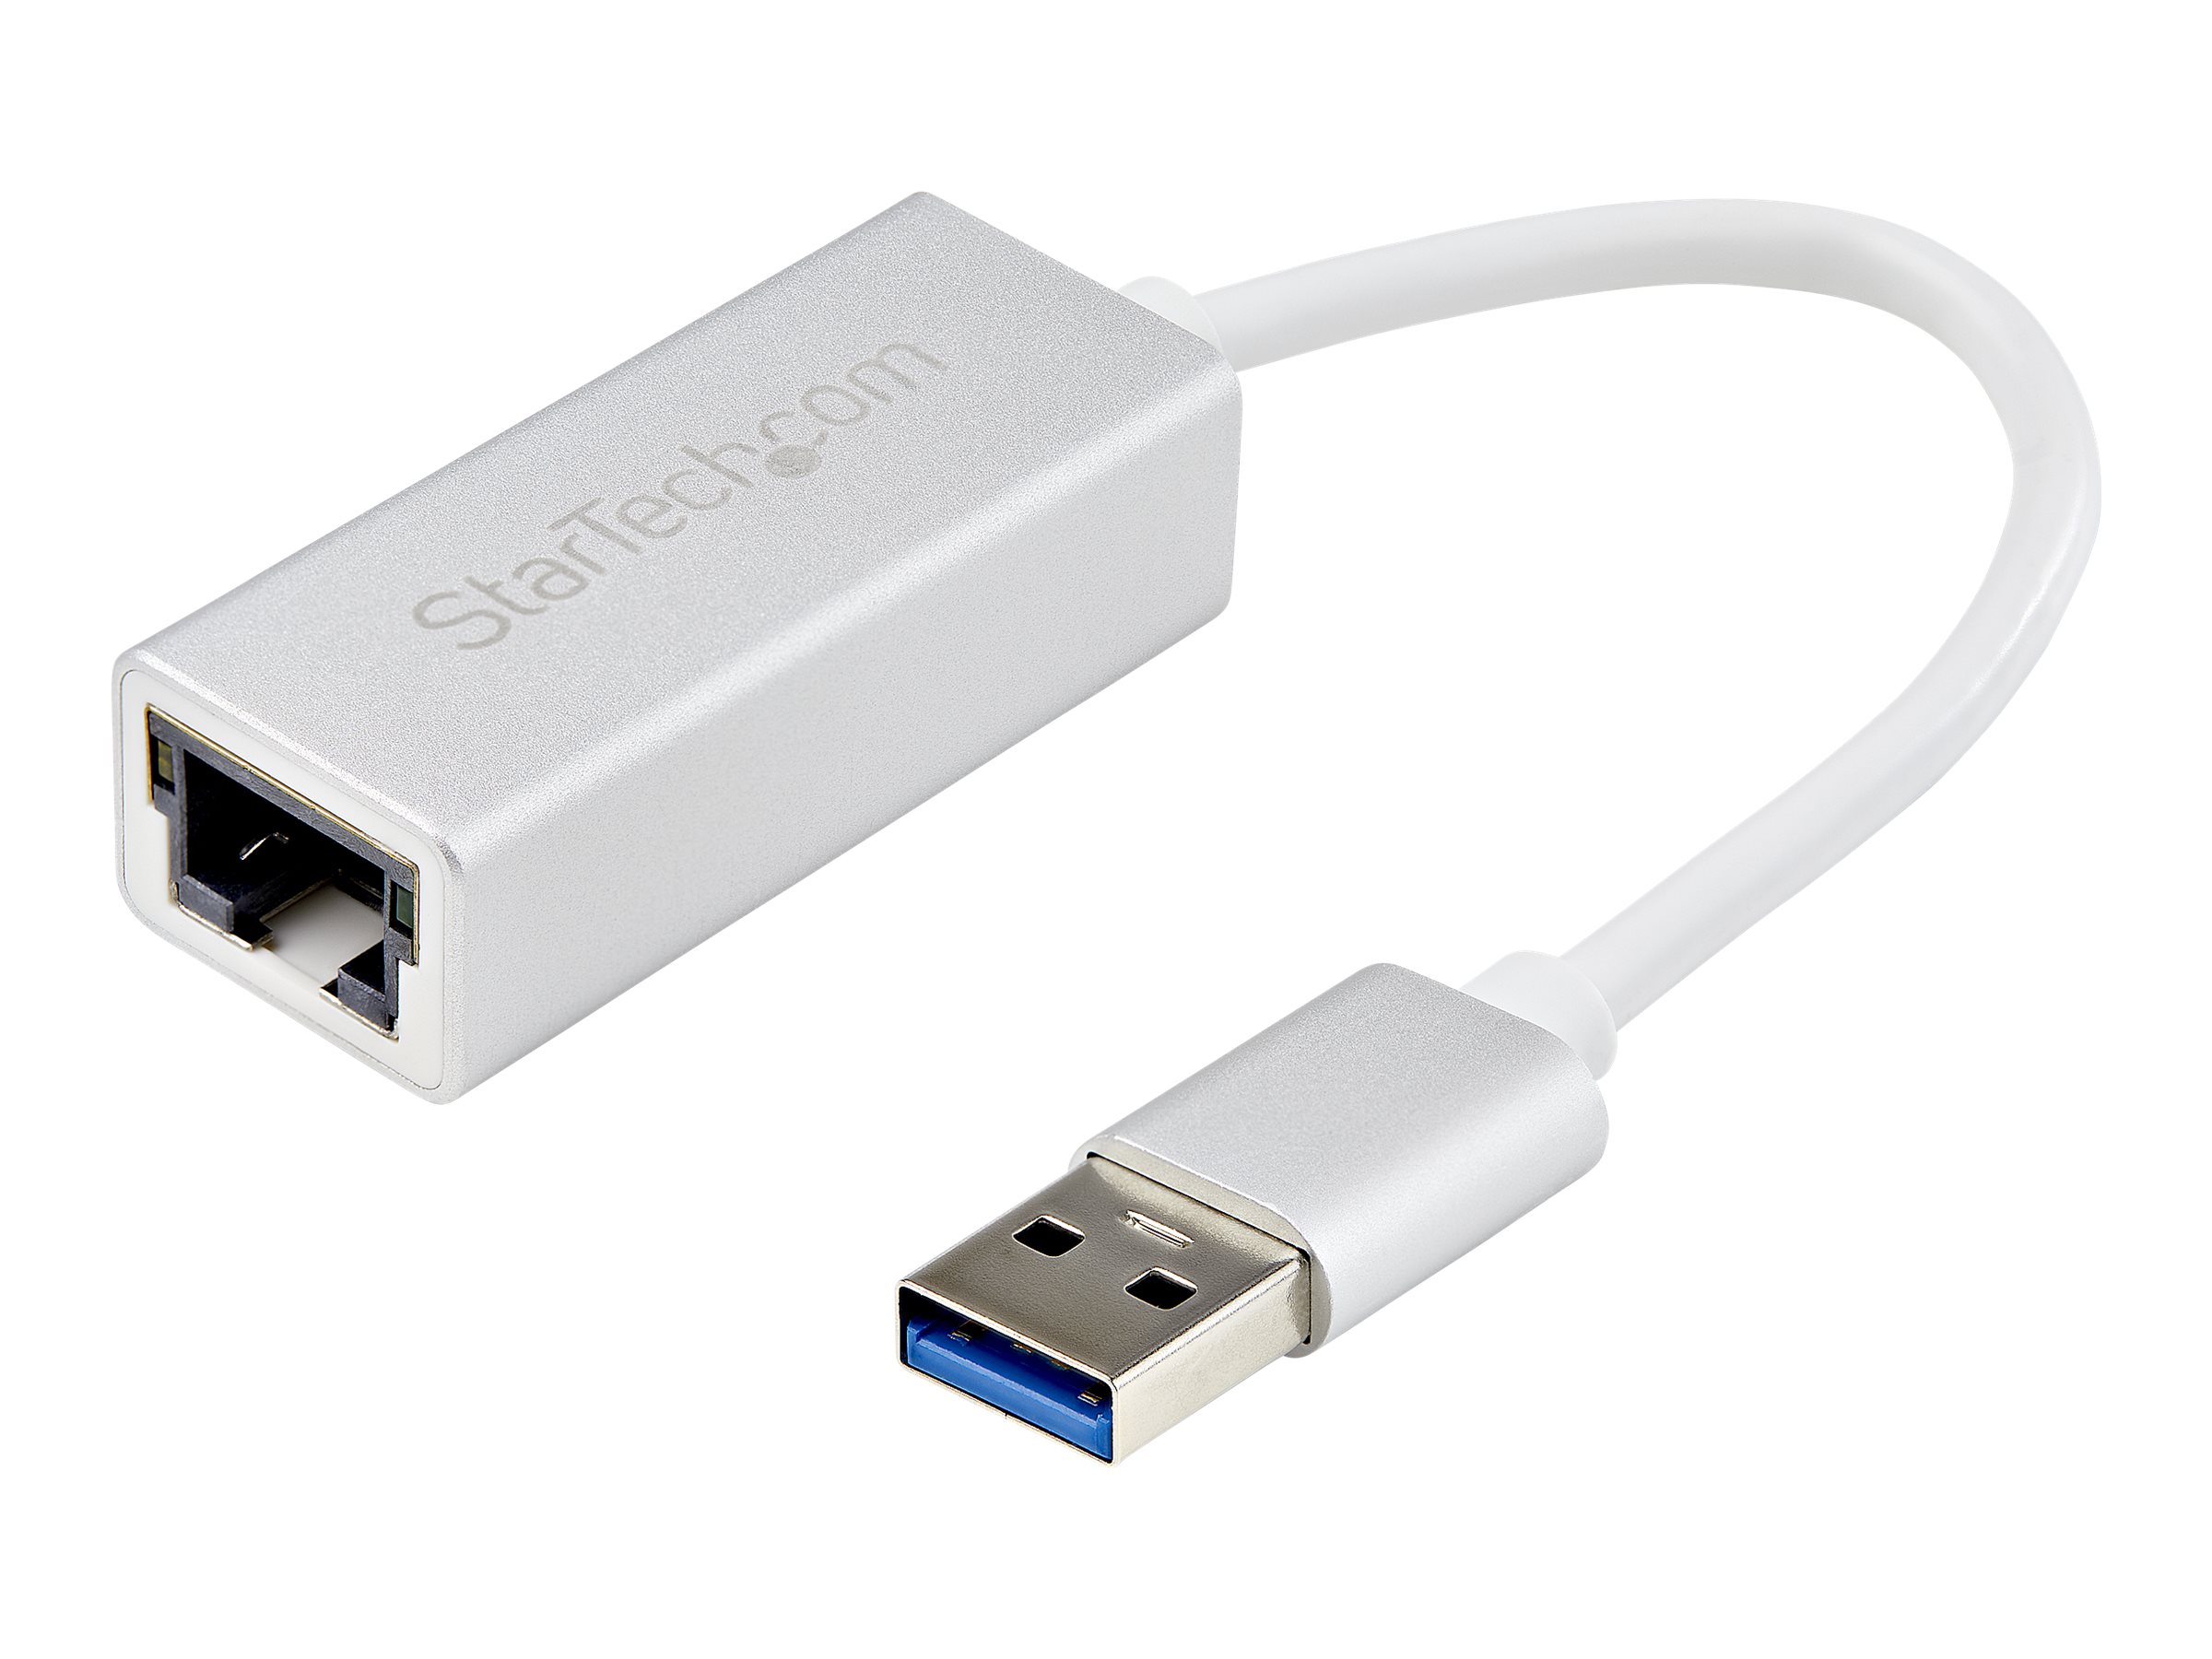 USB 3.0auf RJ45 10/100/1000Mbps Netzwerkadapter Gigabit Ethernet LAN Adapter DHL 